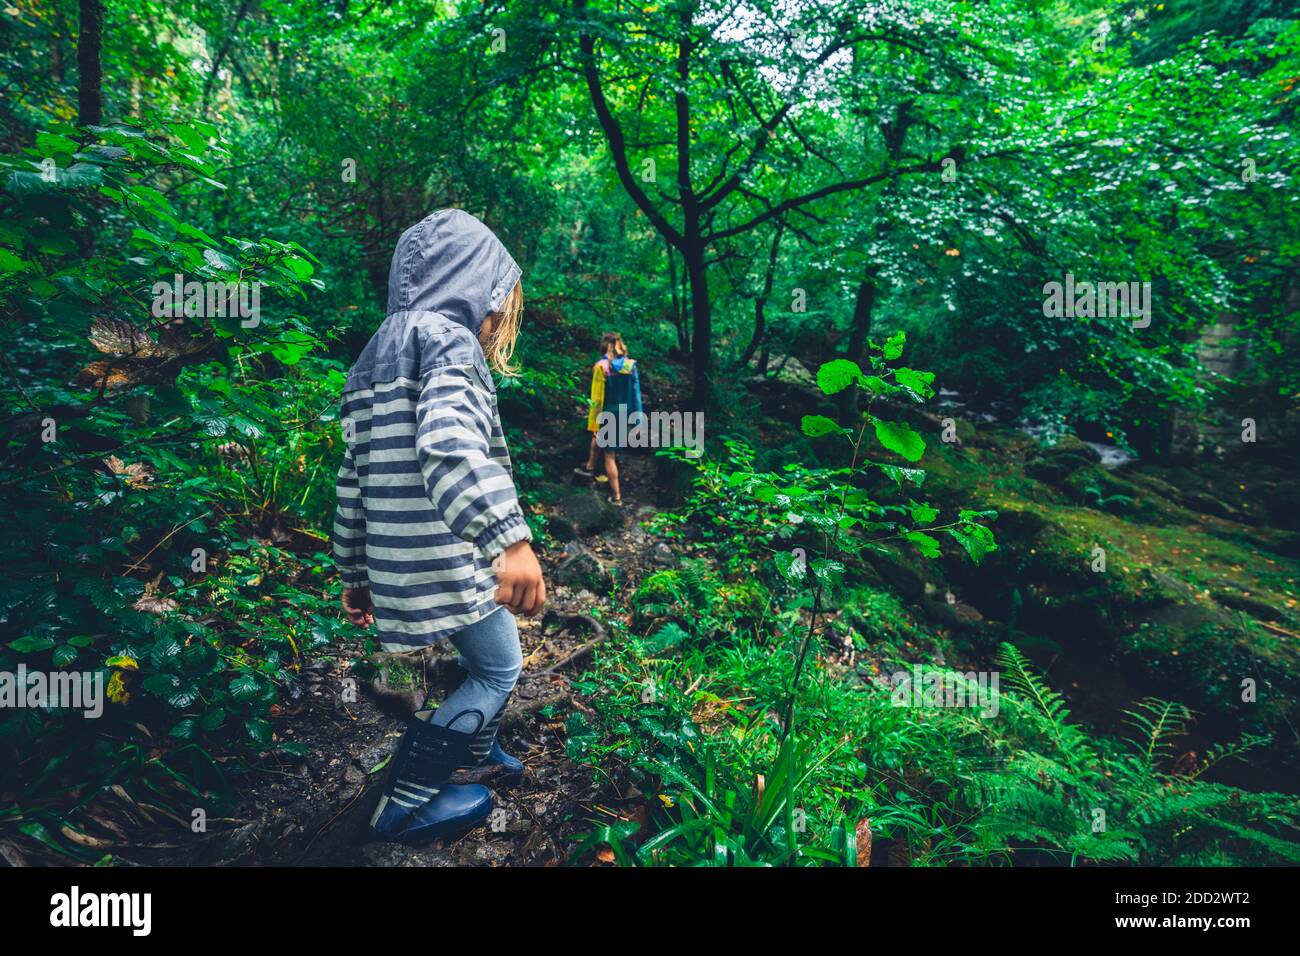 Un pré-chooler marche dans la forêt avec sa mère par temps pluvieux Banque D'Images